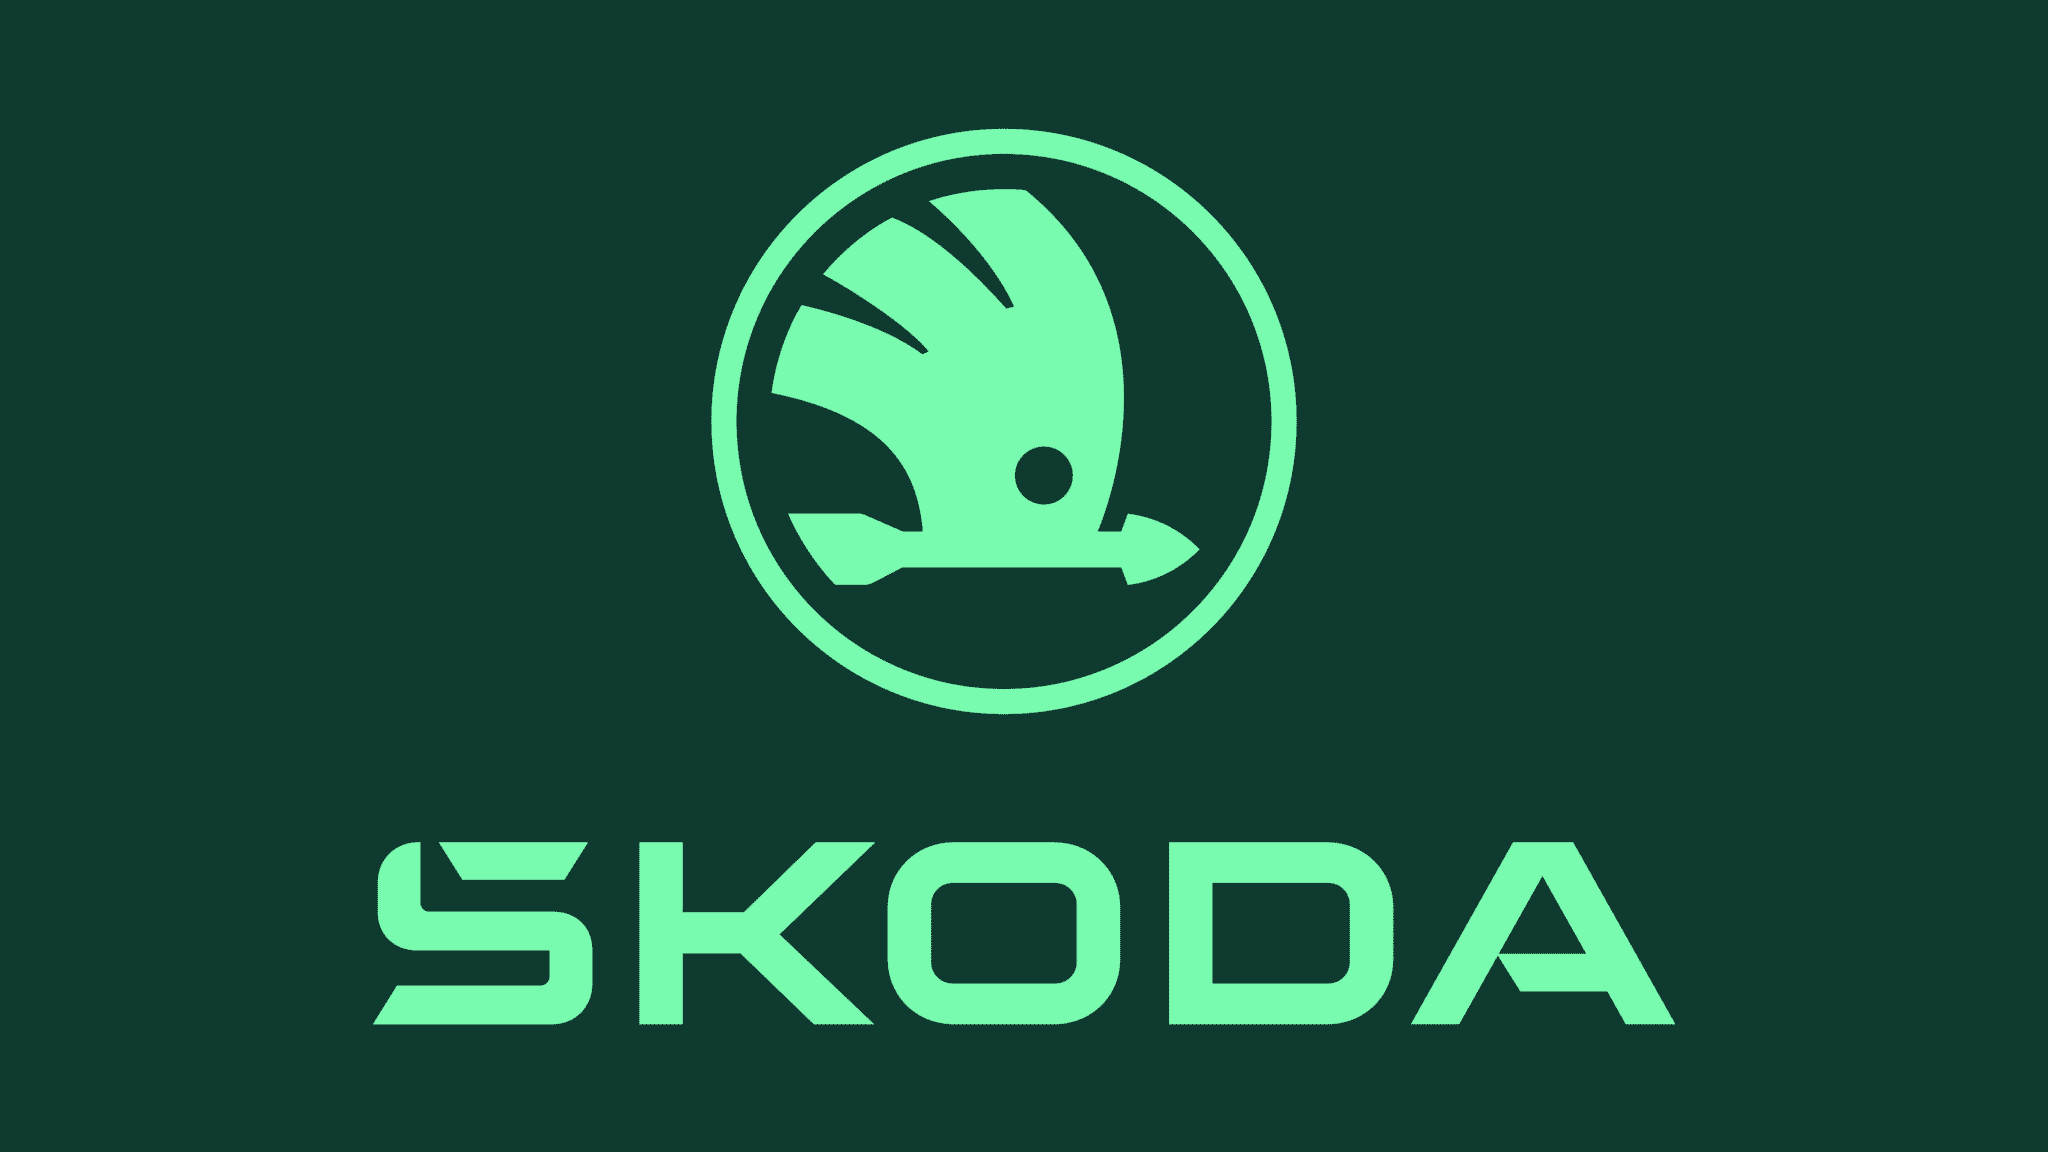 ŠKODA AUTO stellt neuen Markenauftritt vor und beschleunigt E-Offensive | 019 skoda logo picturemark